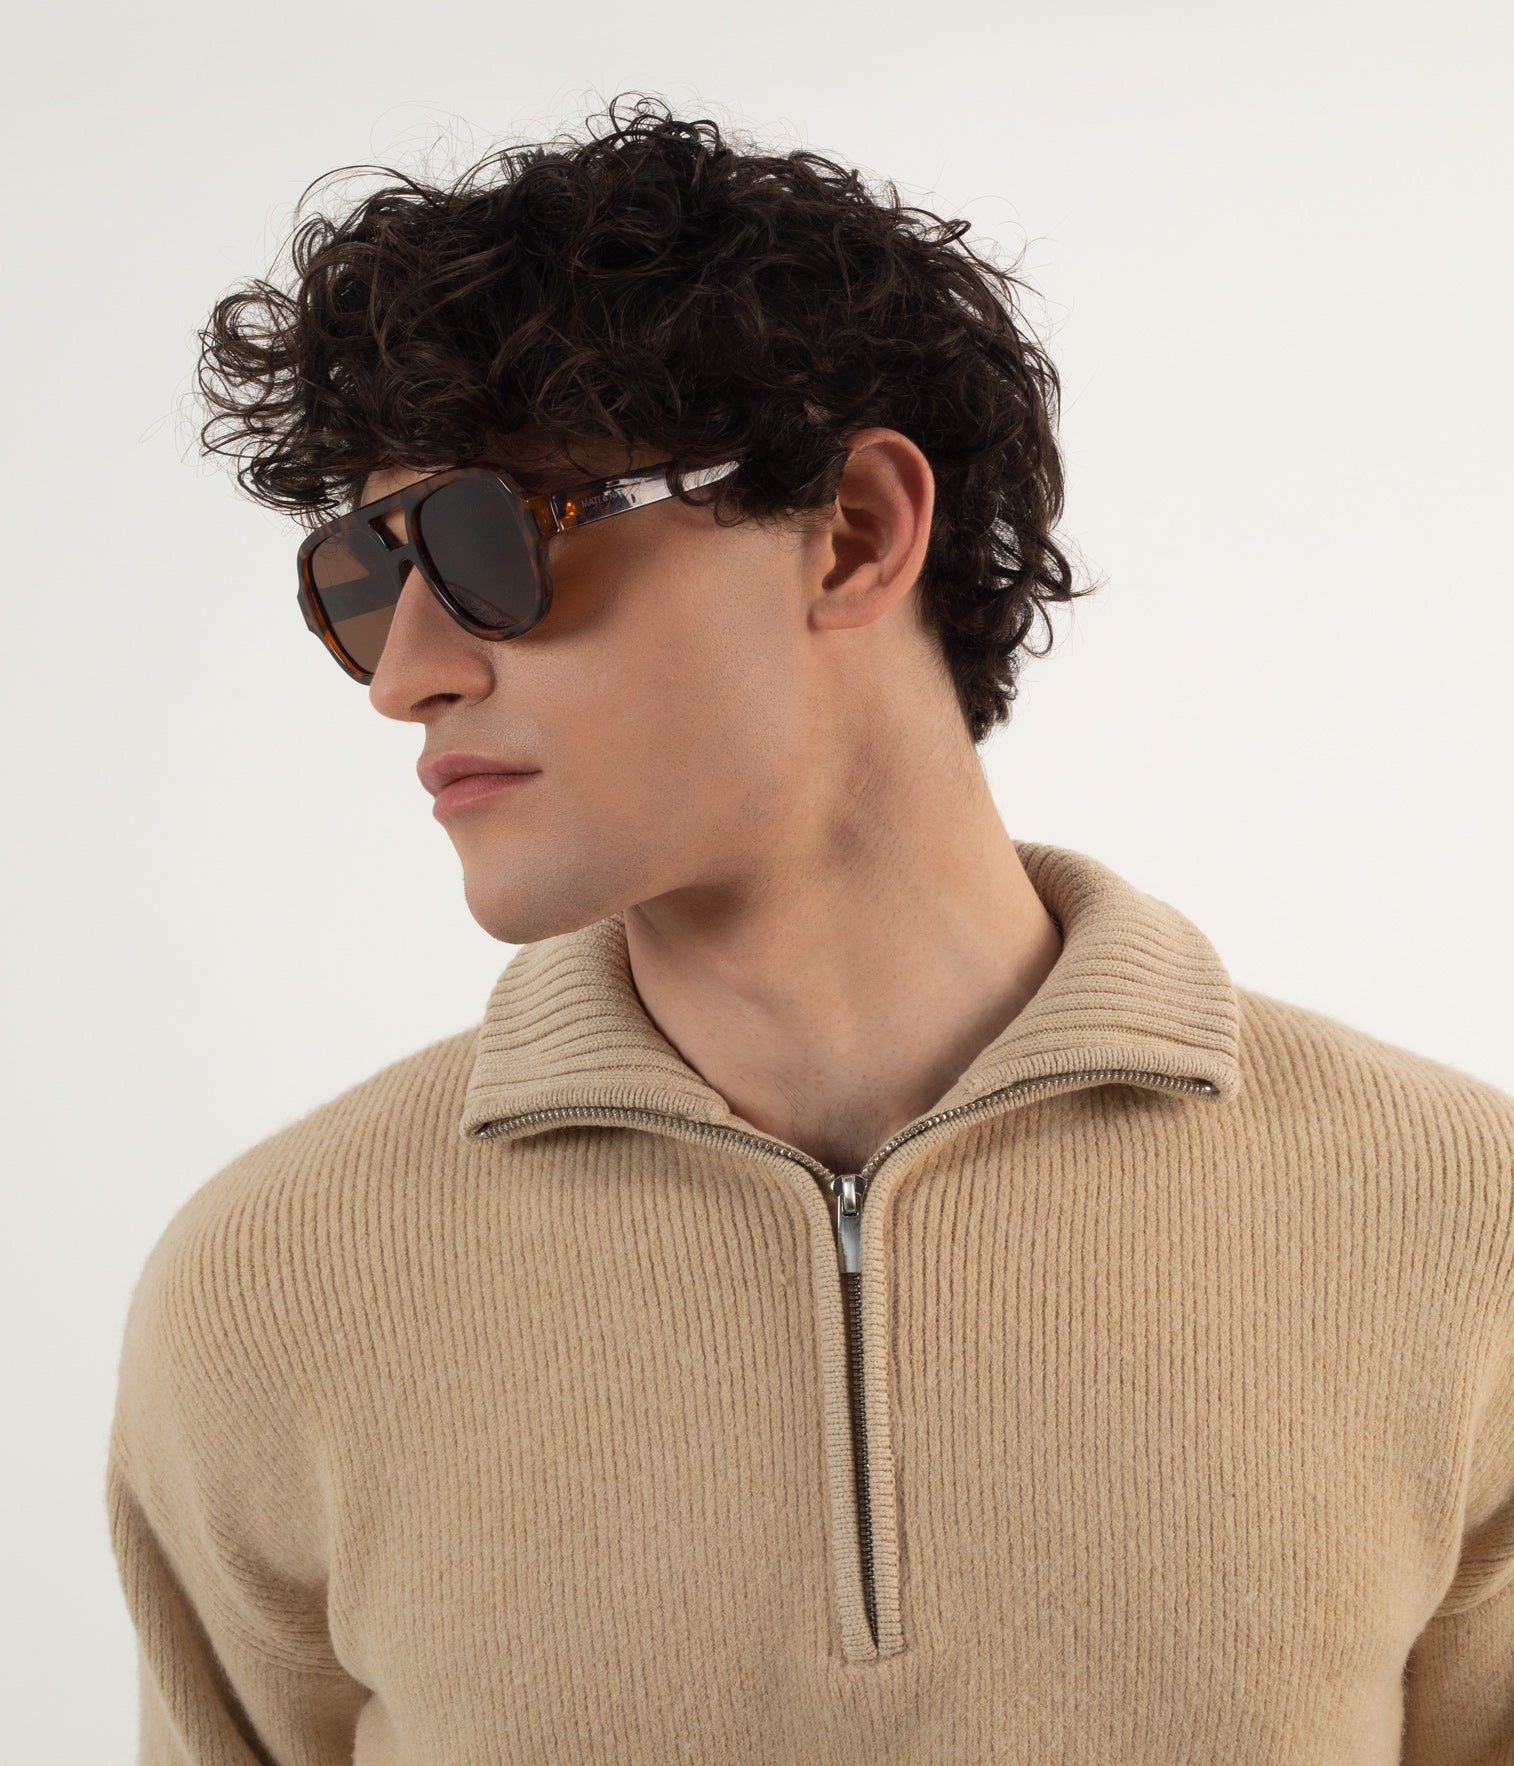 variant:: brun -- choi2 sunglasses brun